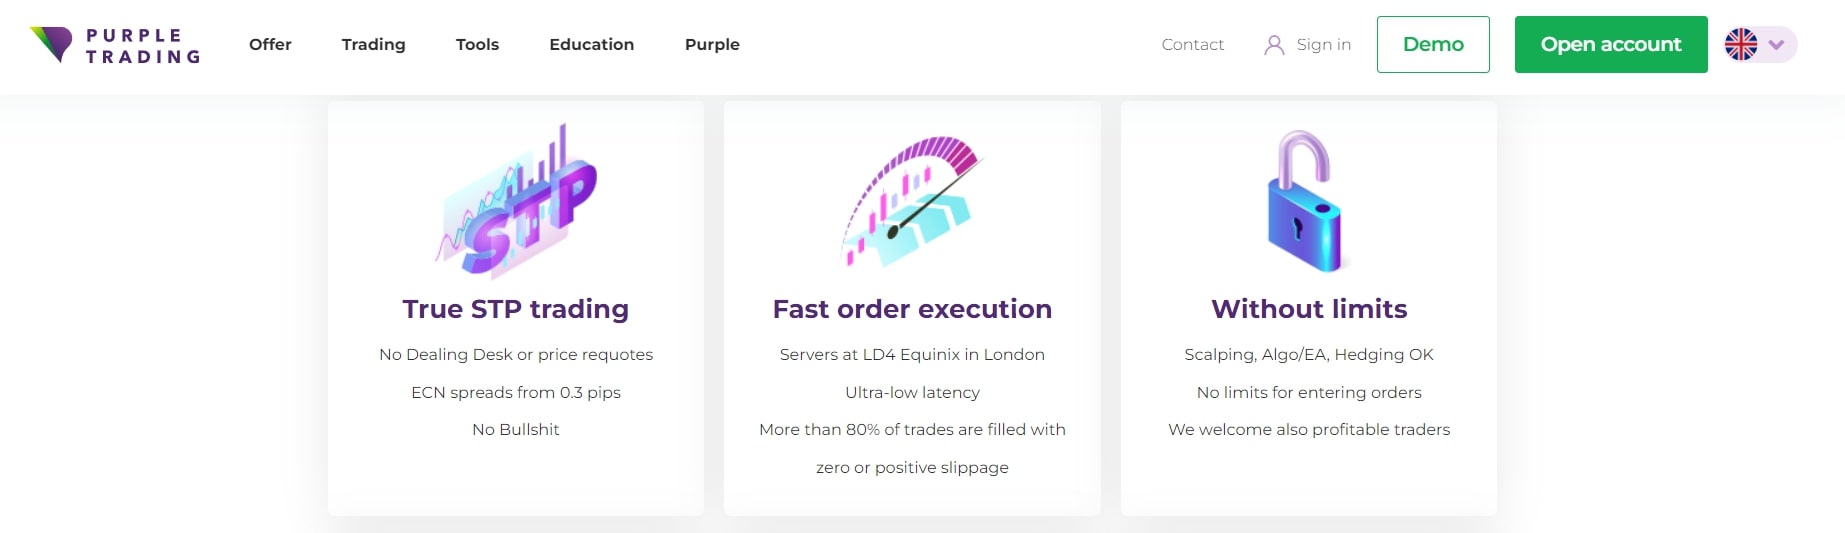 Purple Trading условия